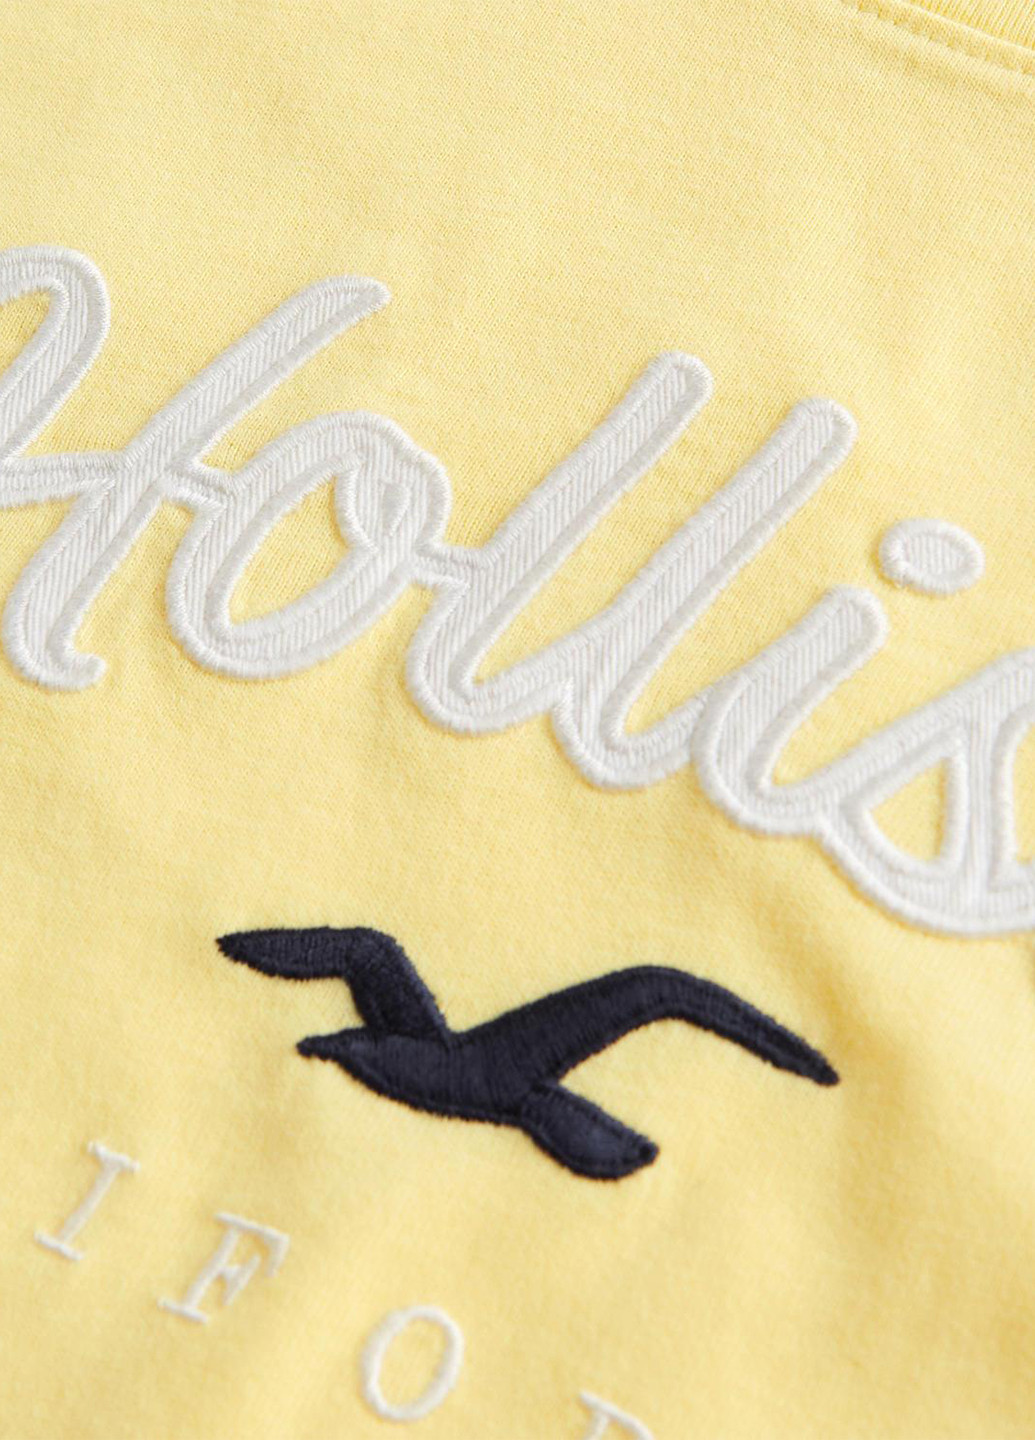 Желтая летняя футболка Hollister